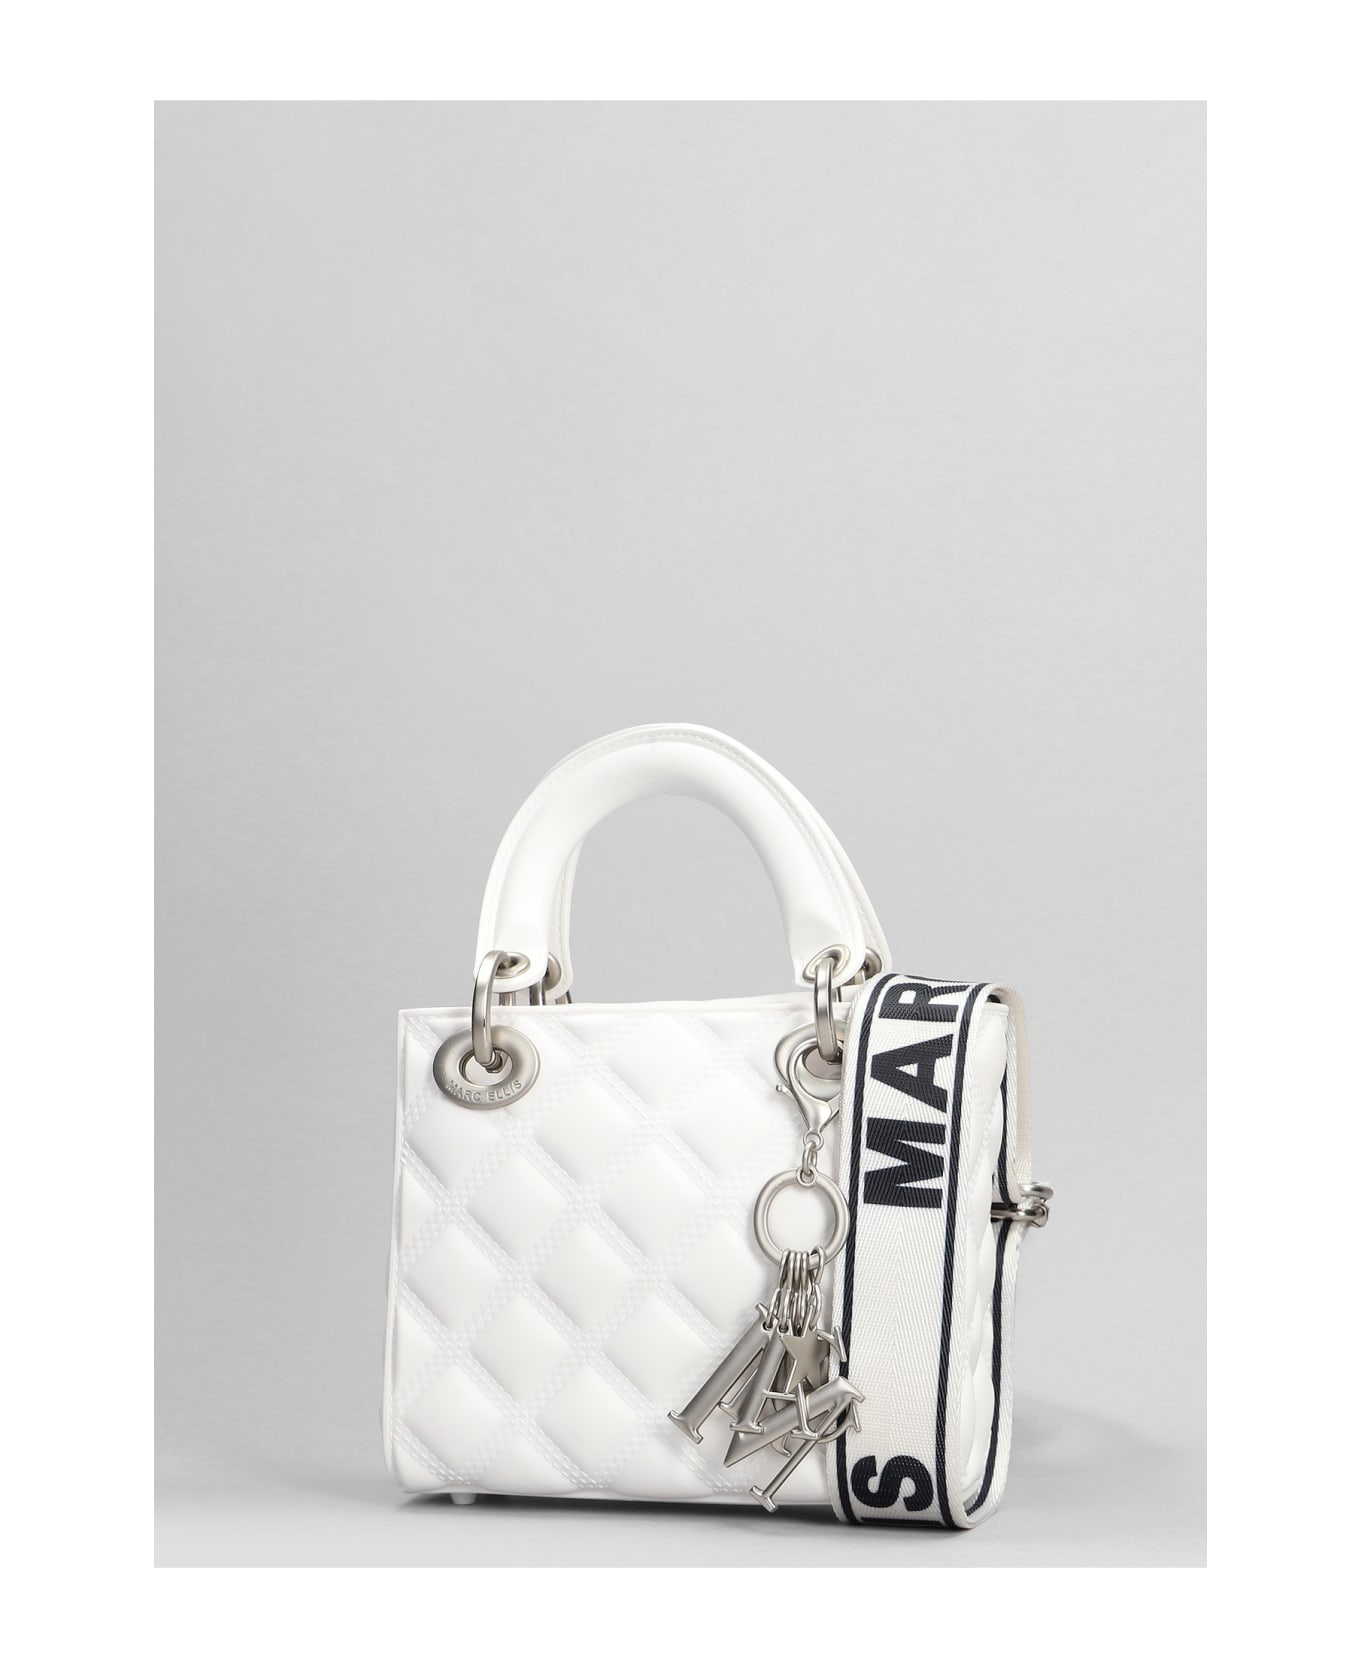 Marc Ellis Flat Missy S Hand Bag In White Pvc - white